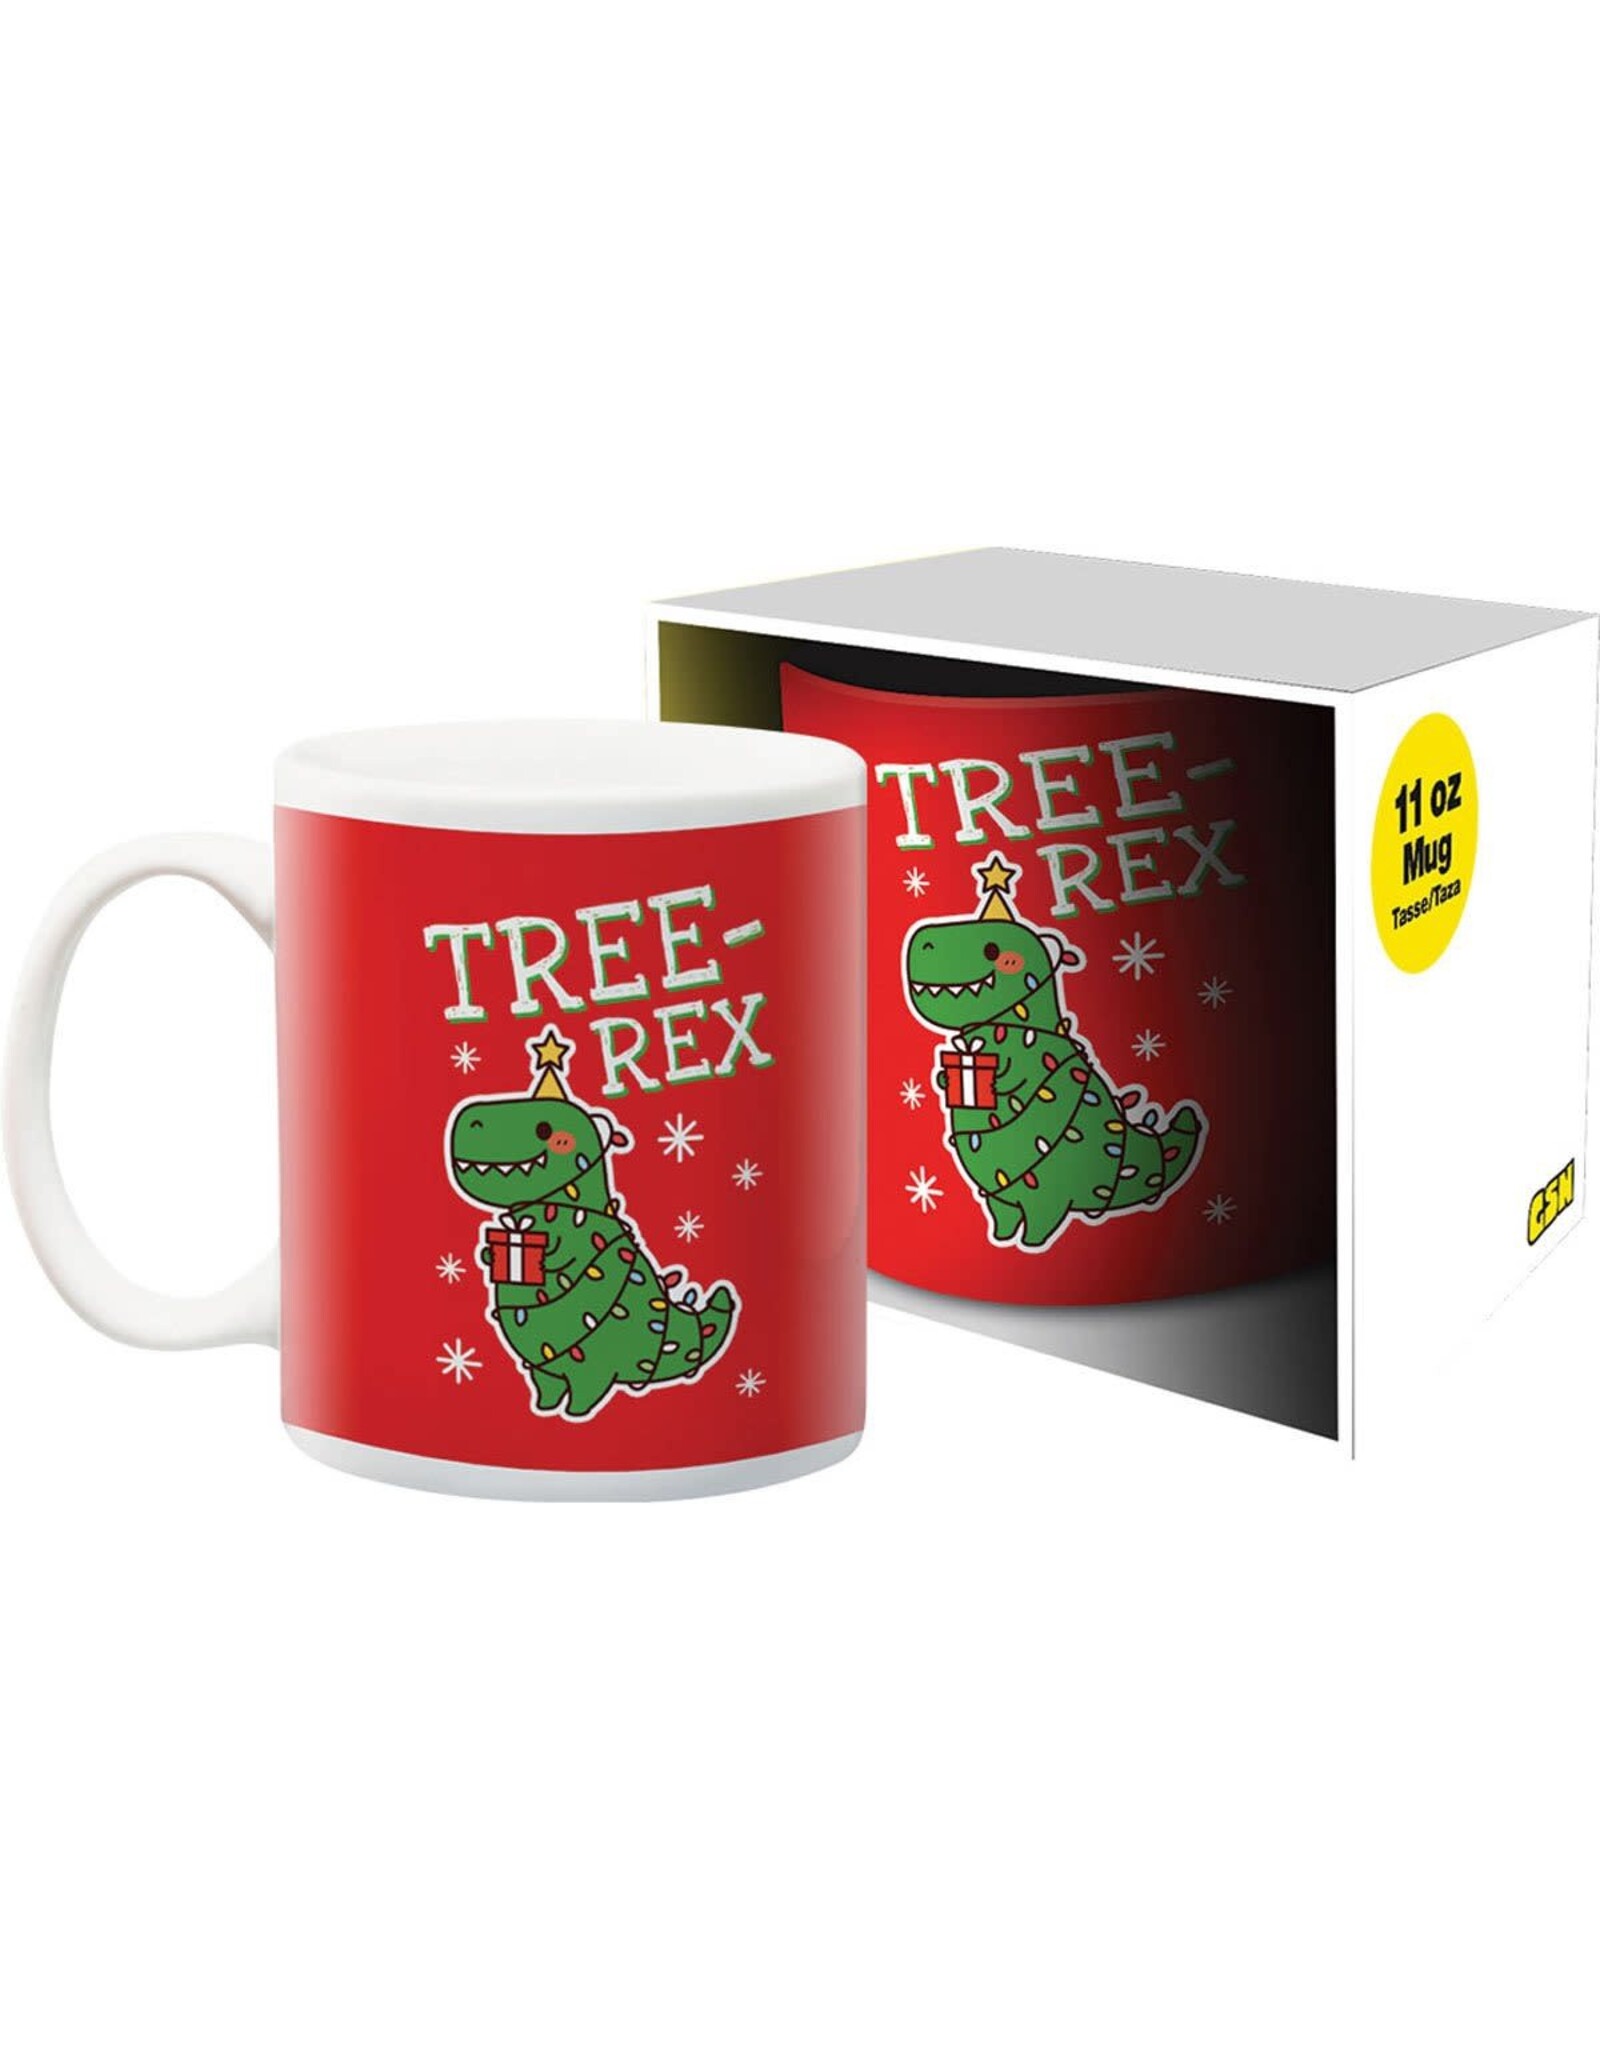 NMR Tree Rex 11oz Boxed Mug